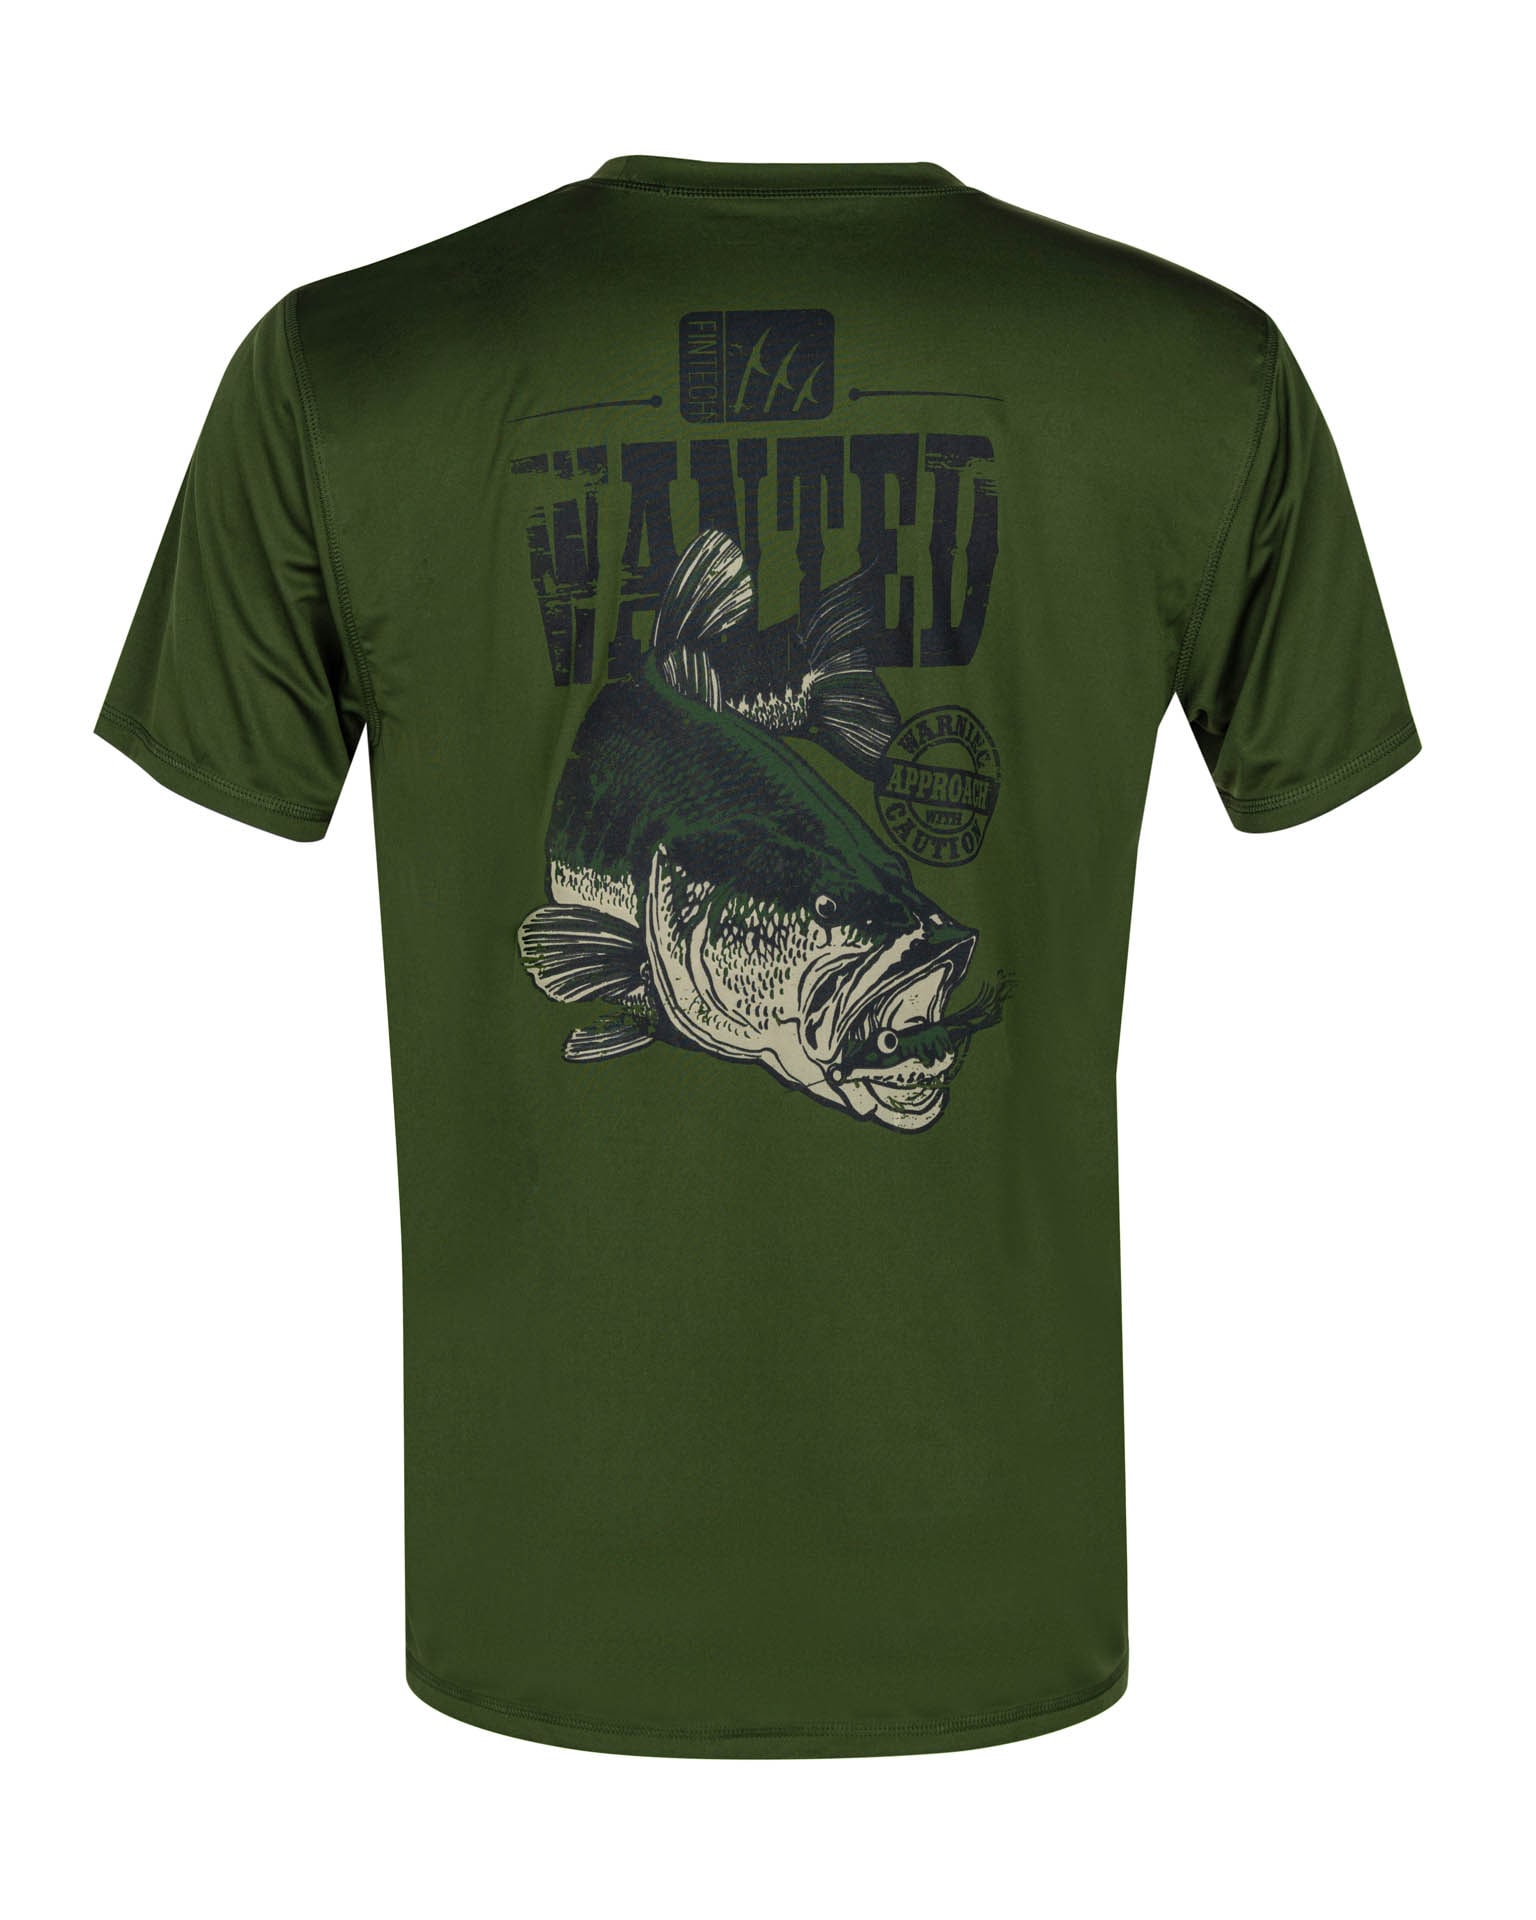 Spyder Men's Short Sleeve Graphic Cotton T-Shirt, Color Options – Fanletic